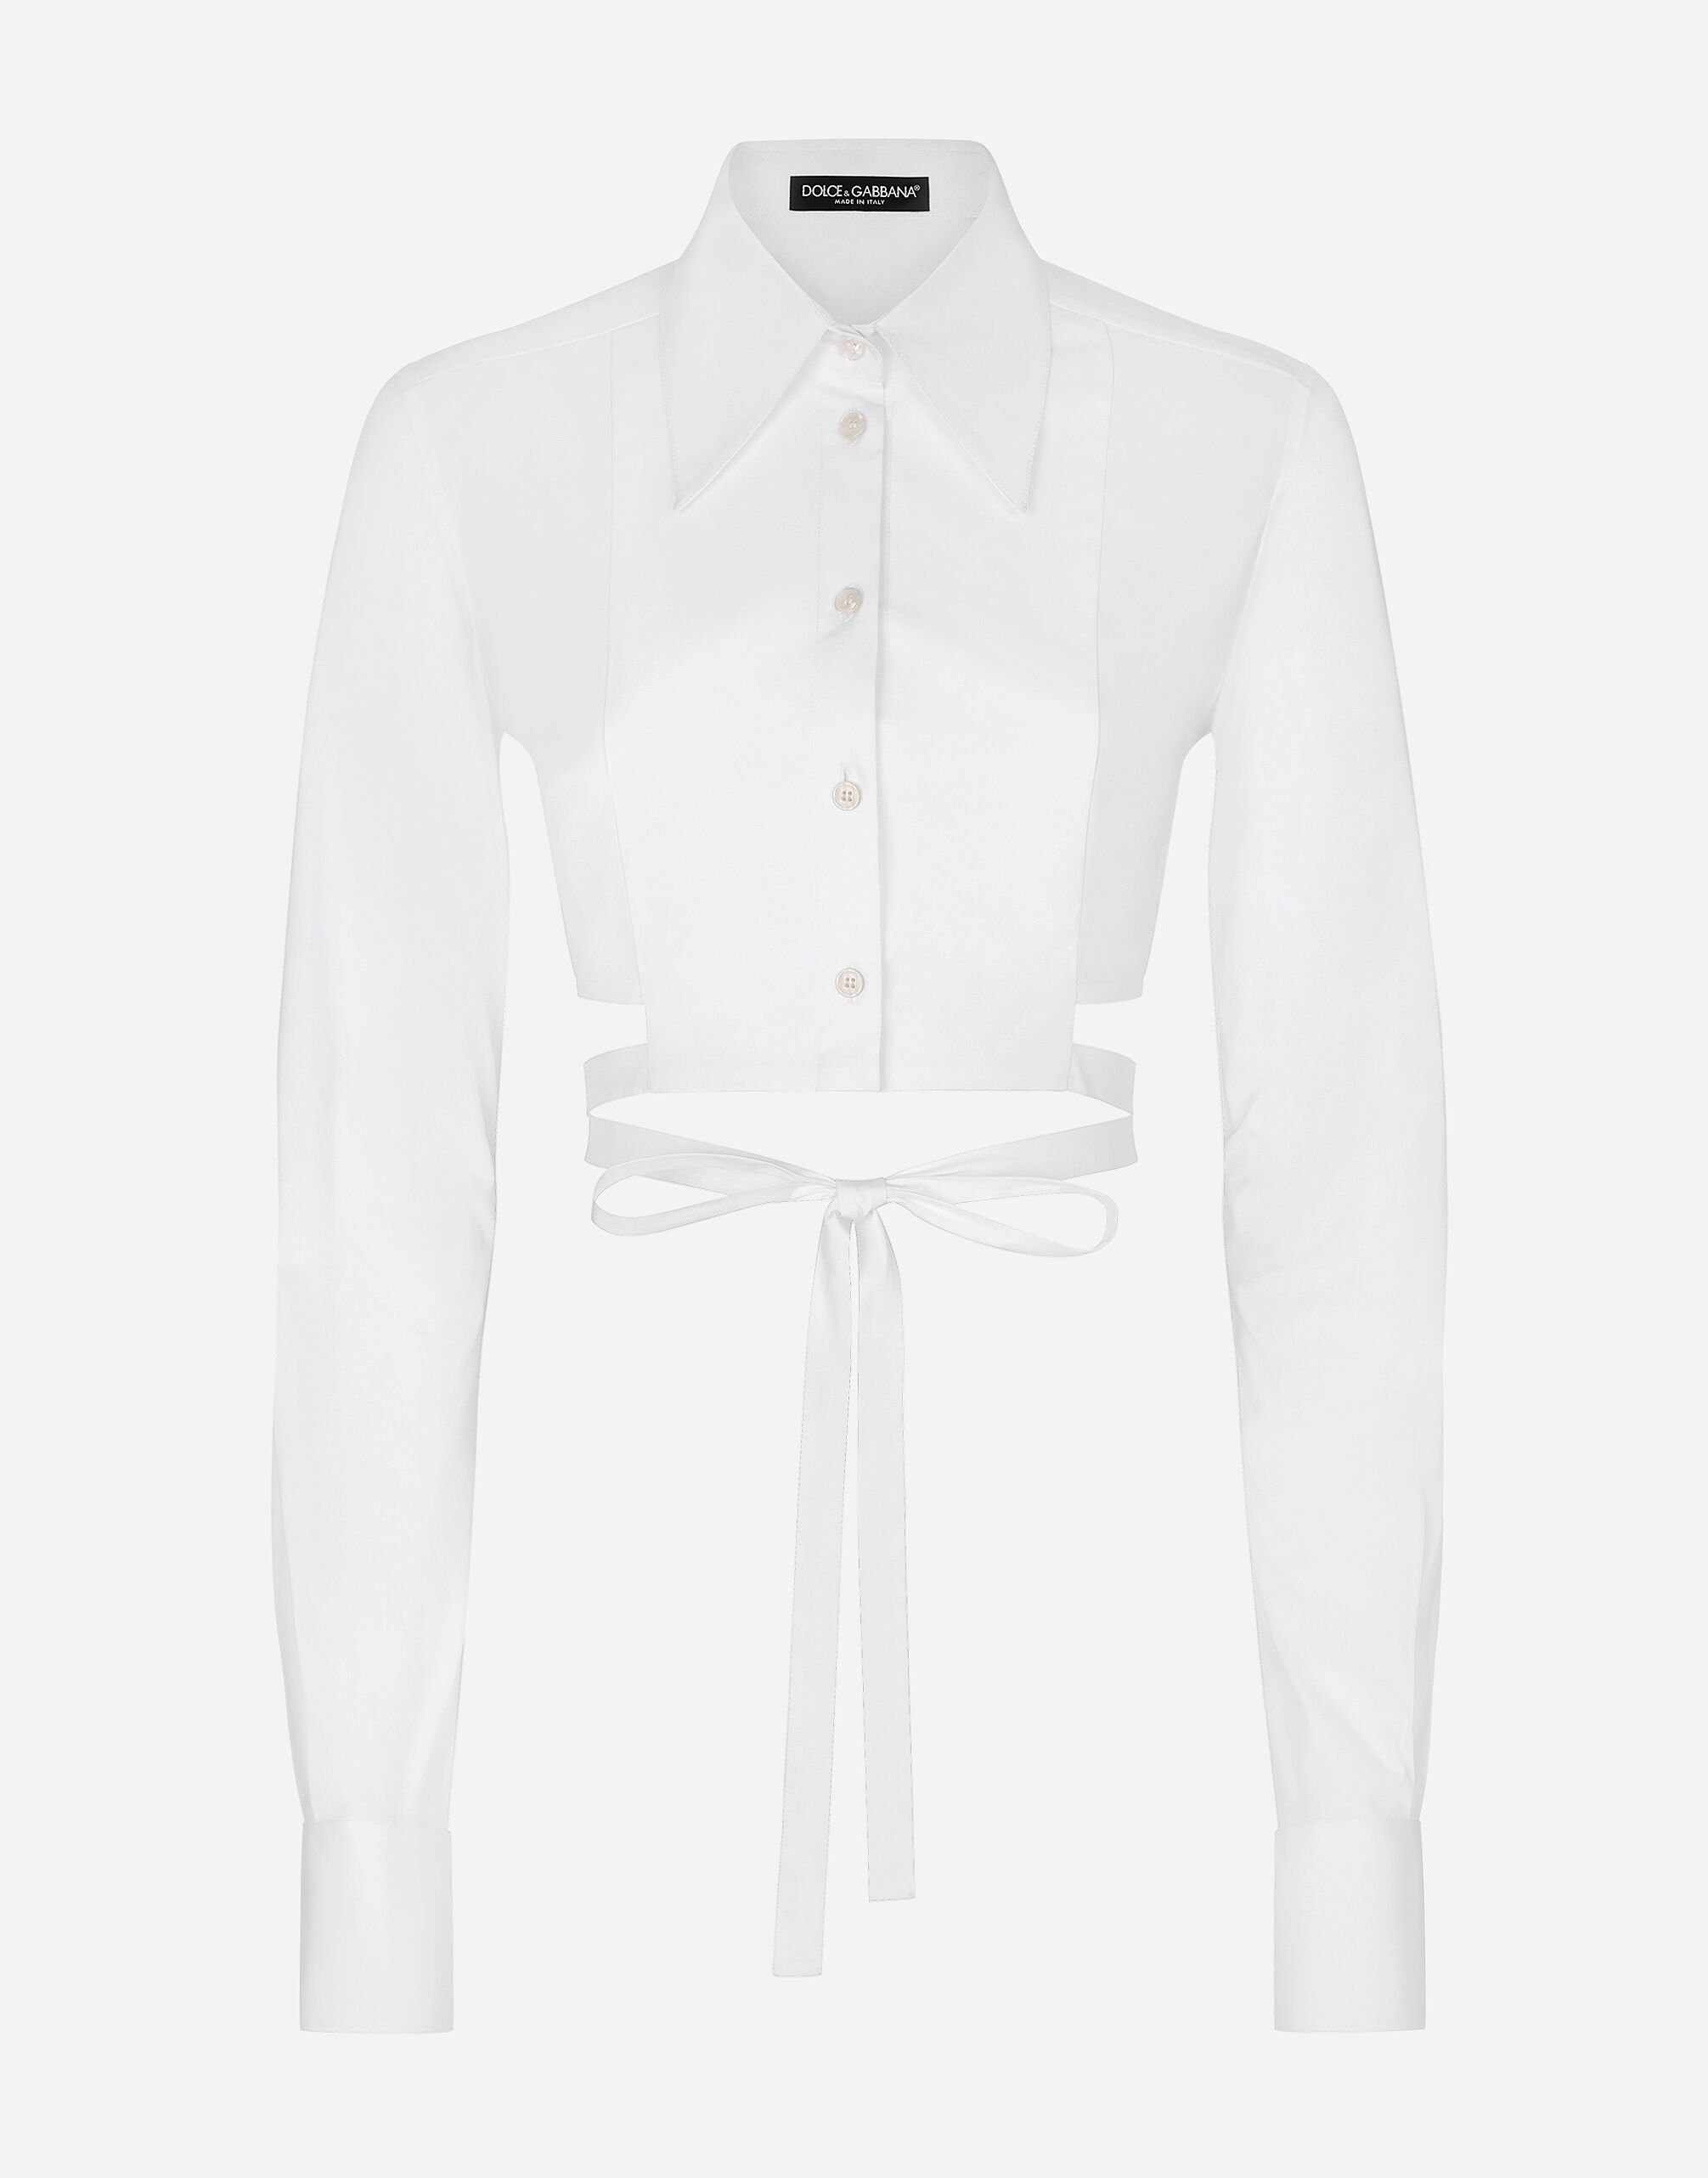 Dolce & Gabbana Camisa corta de algodón con cordones cruzados Imprima F5S48TIS1VL